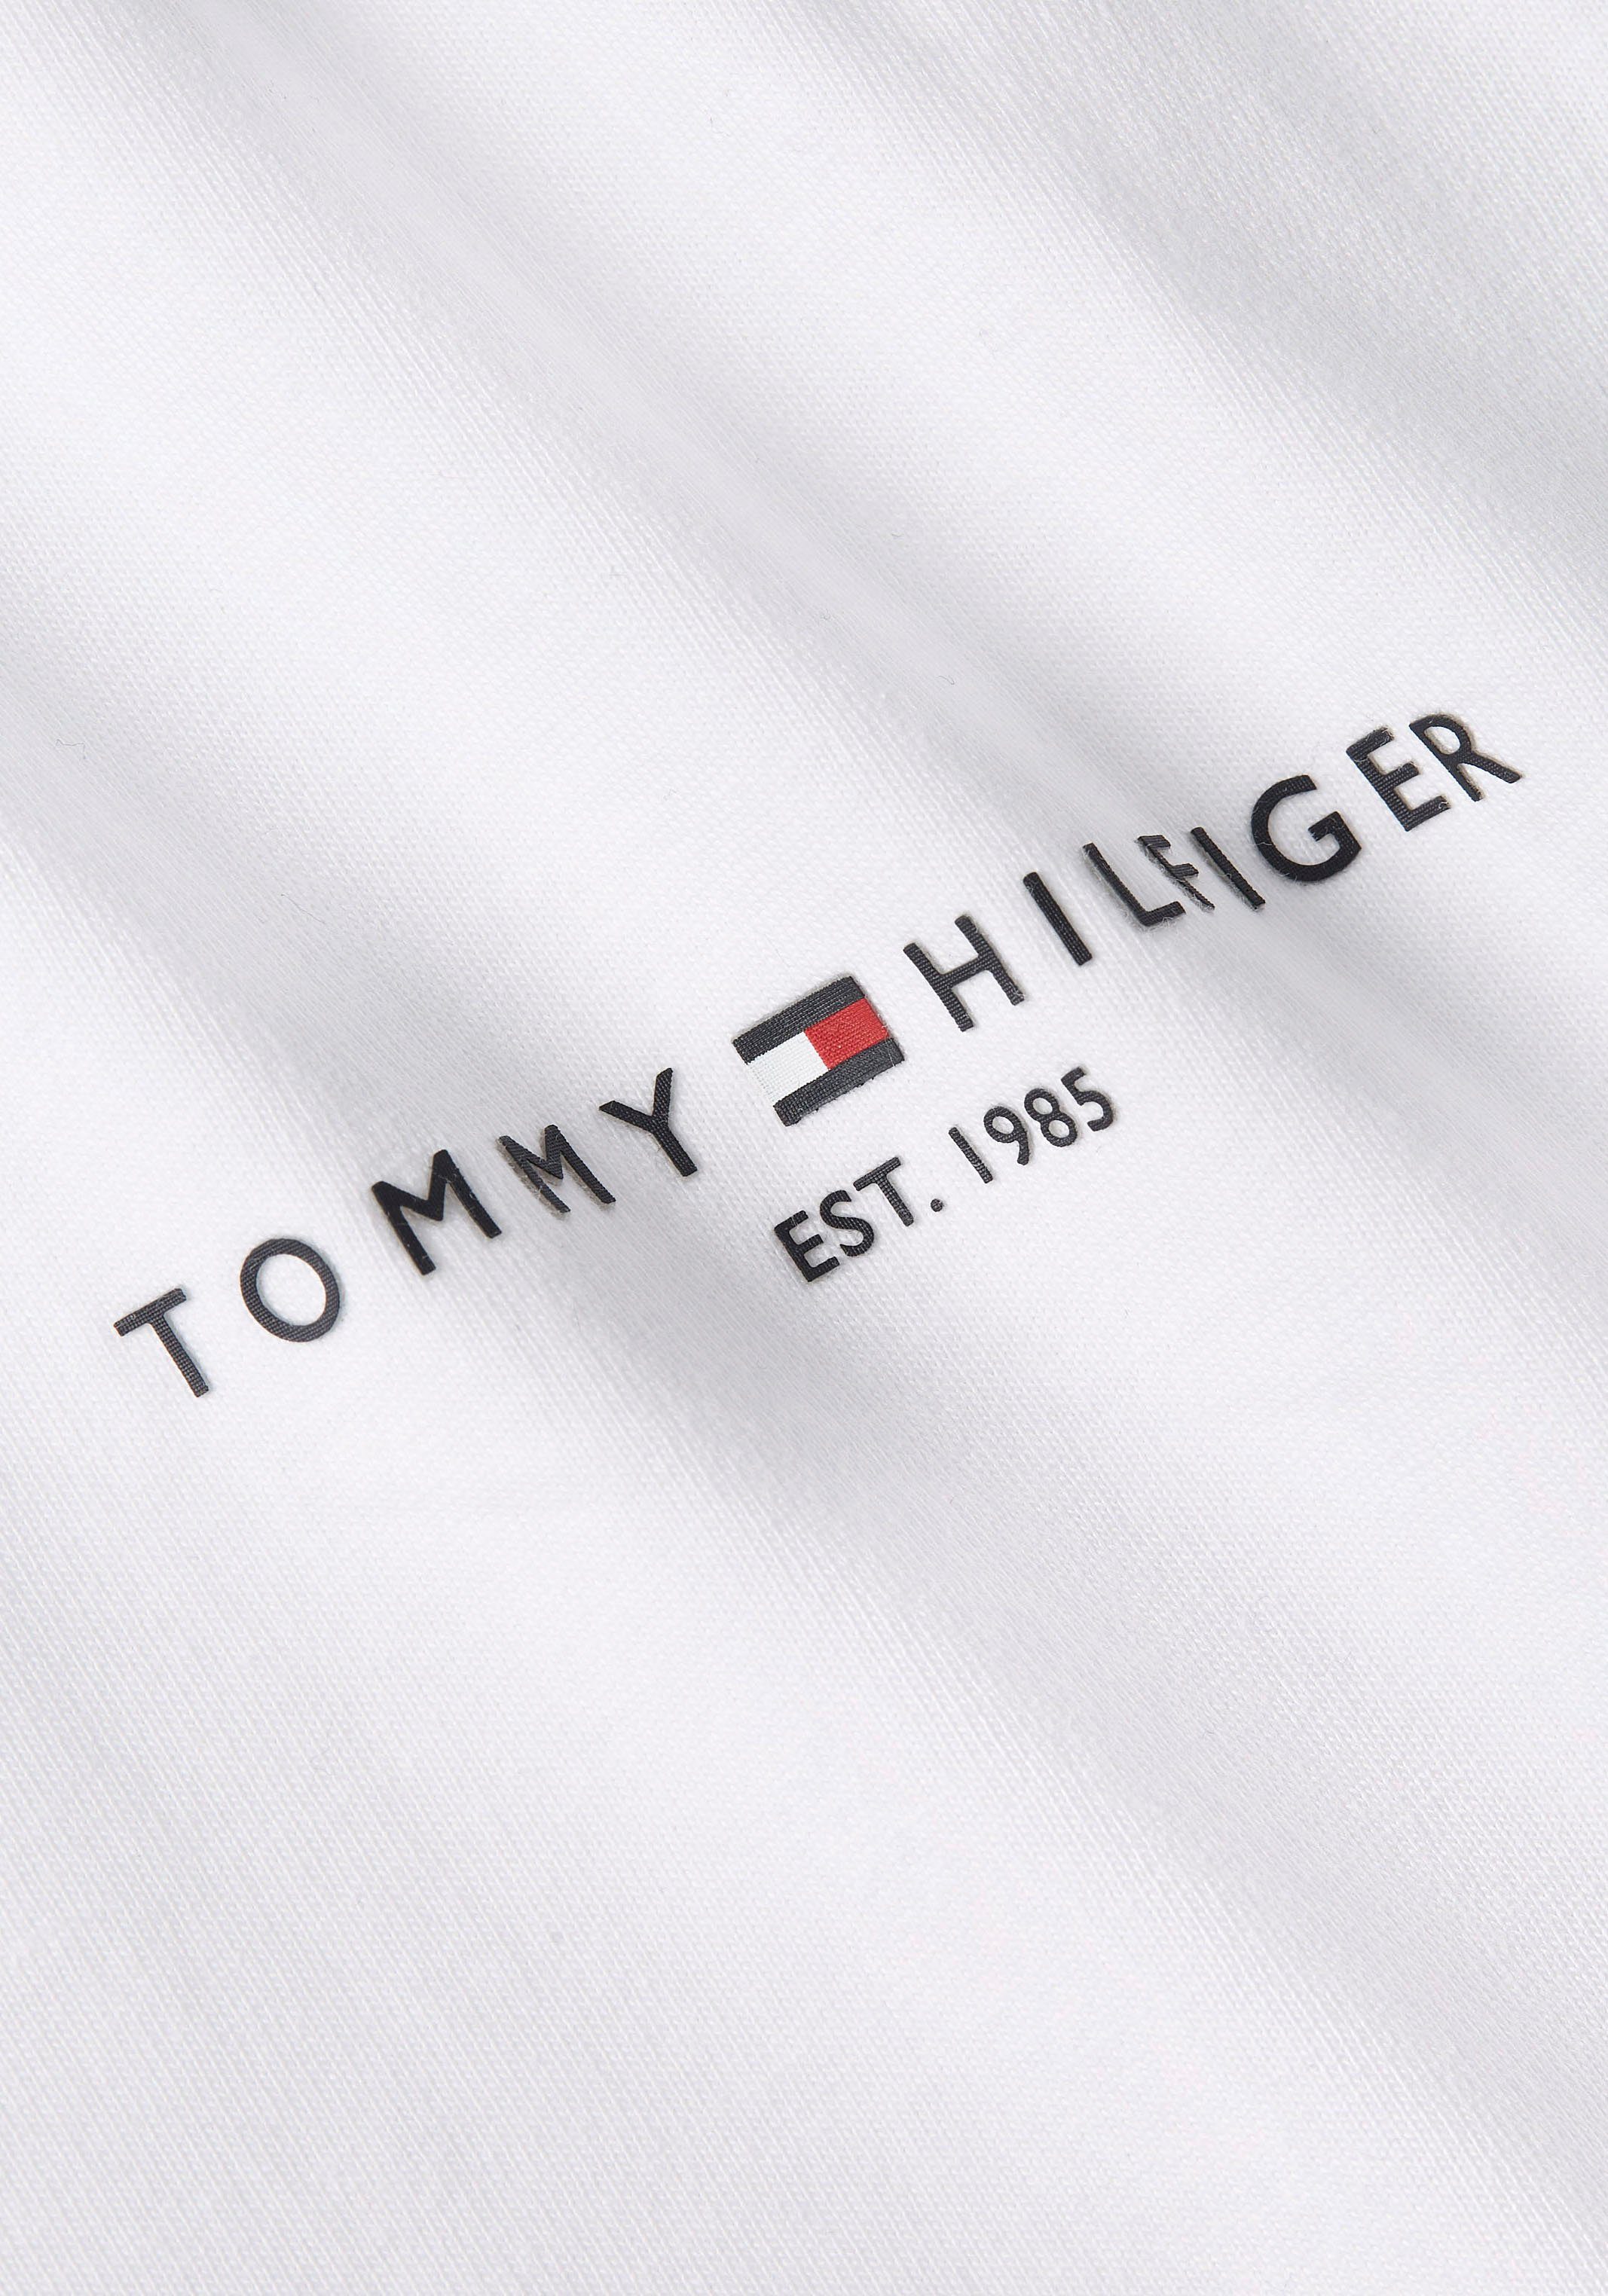 TH-Farben Rundhalsshirt beiden Streifen Hilfiger STRIPE PREP TEE GLOBAL an White Tommy in Ärmeln mit